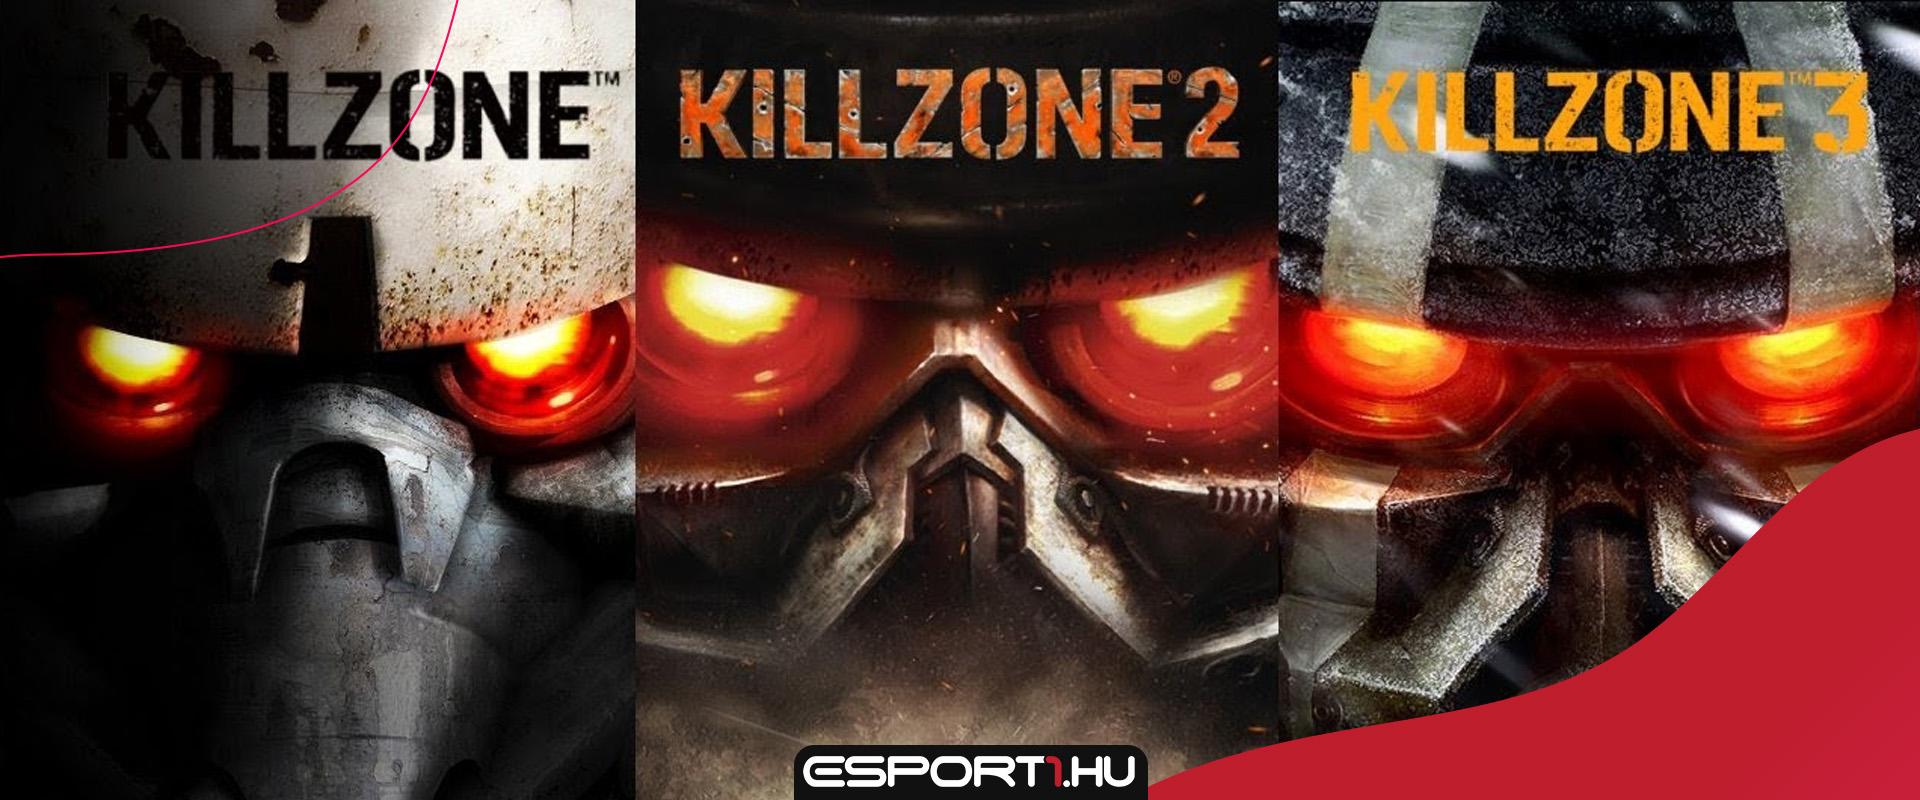 Egy franchise vége: Befellegzett a Killzone szériának?